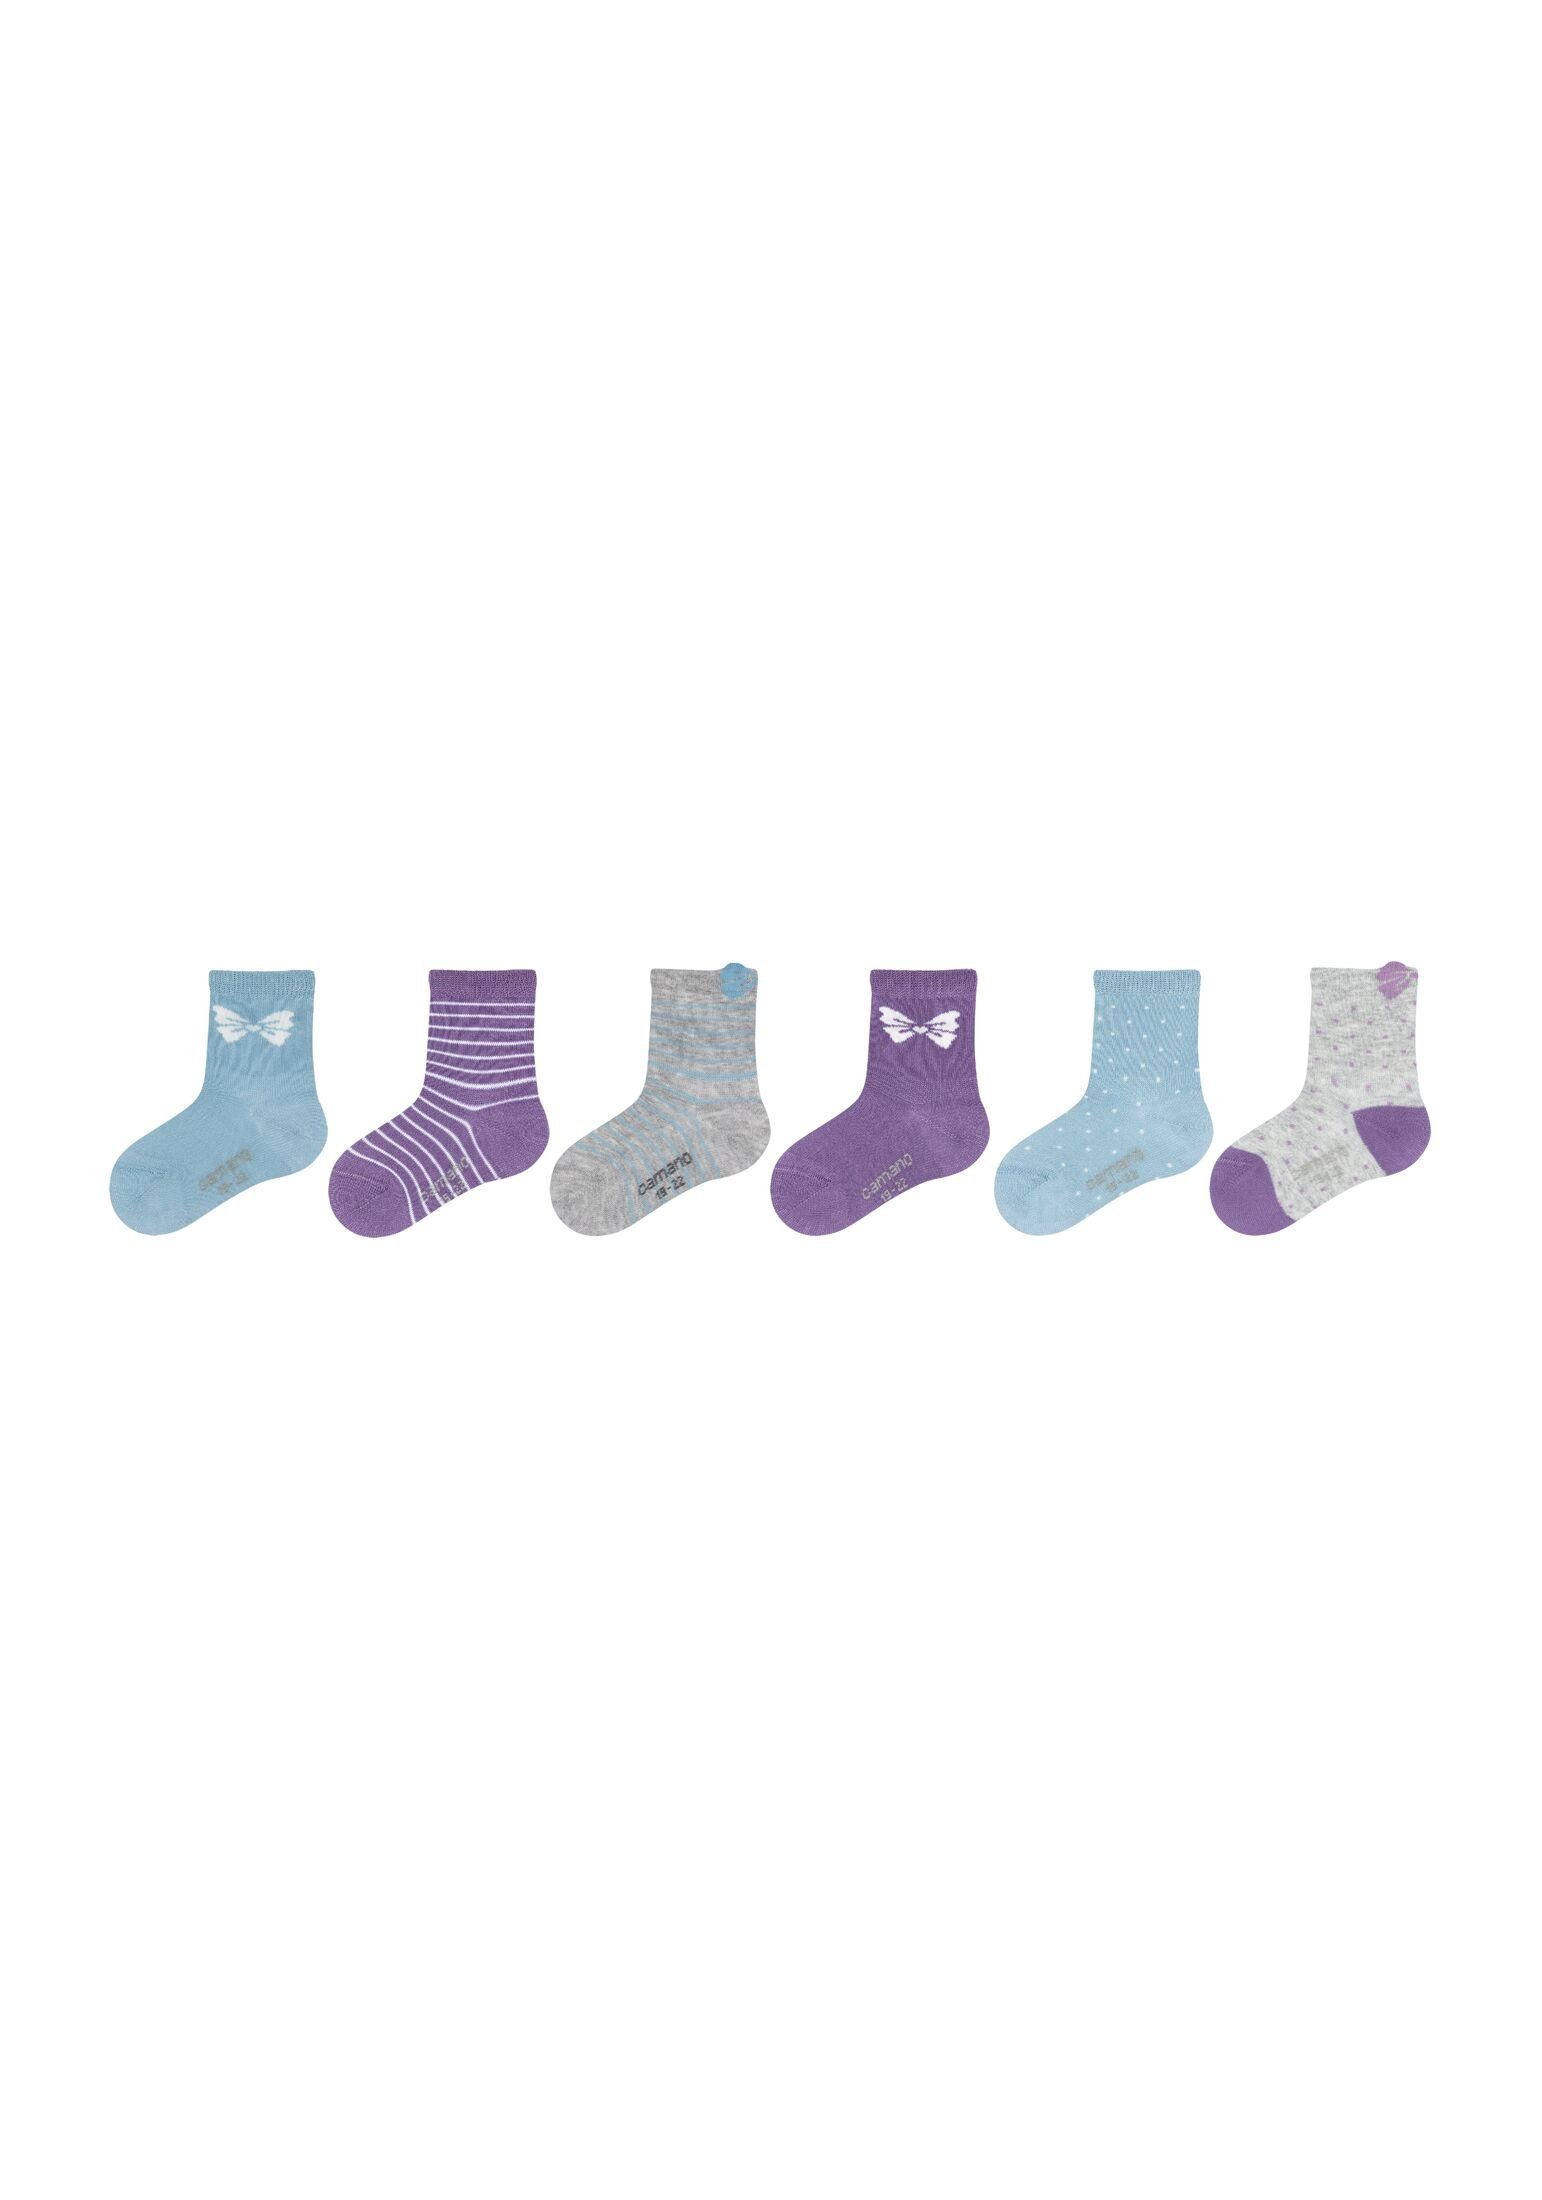 Socken Pack, Socken weicher Hautfreundlich 6er Anteil Bio-Baumwolle Camano an mit hohem